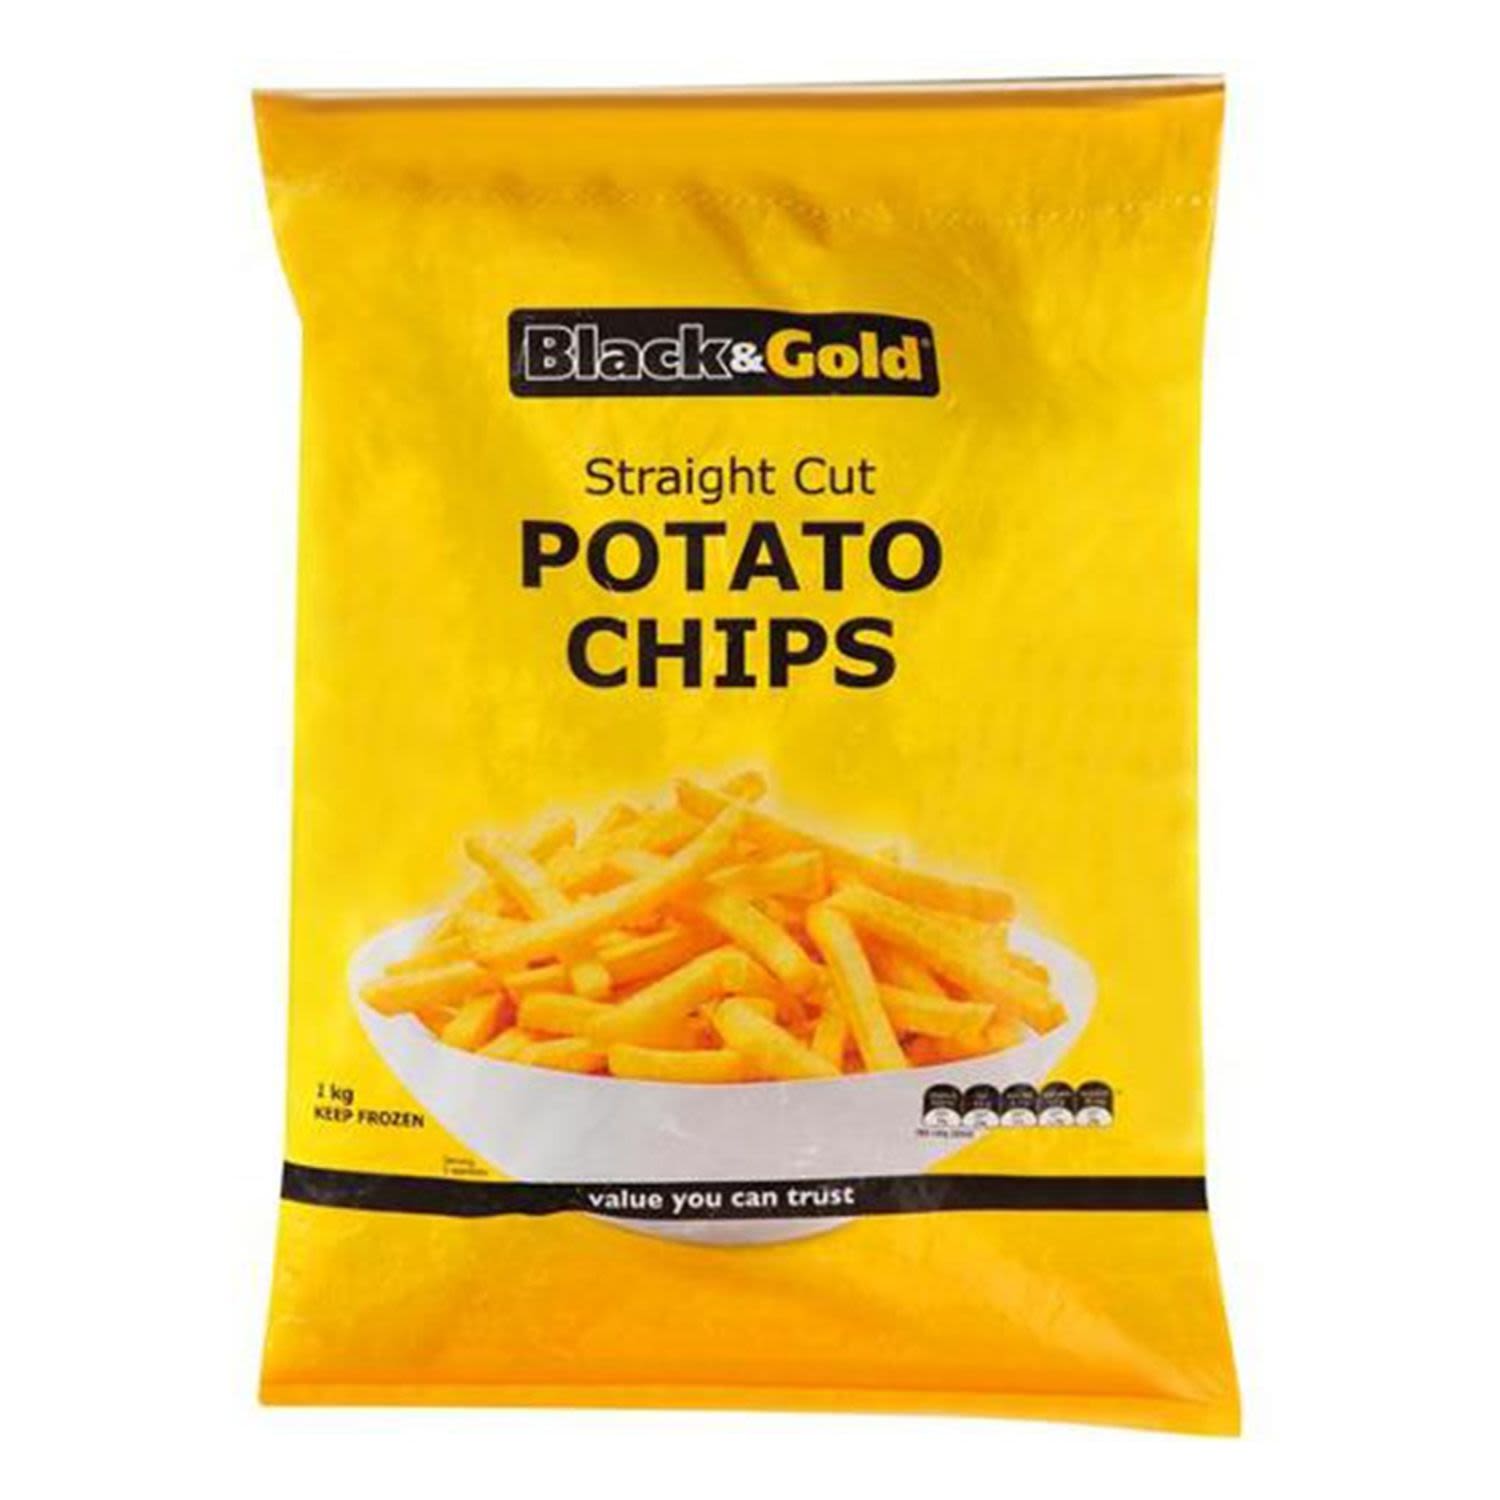 Black & Gold Straight Cut Potato Chips, 1 Kilogram